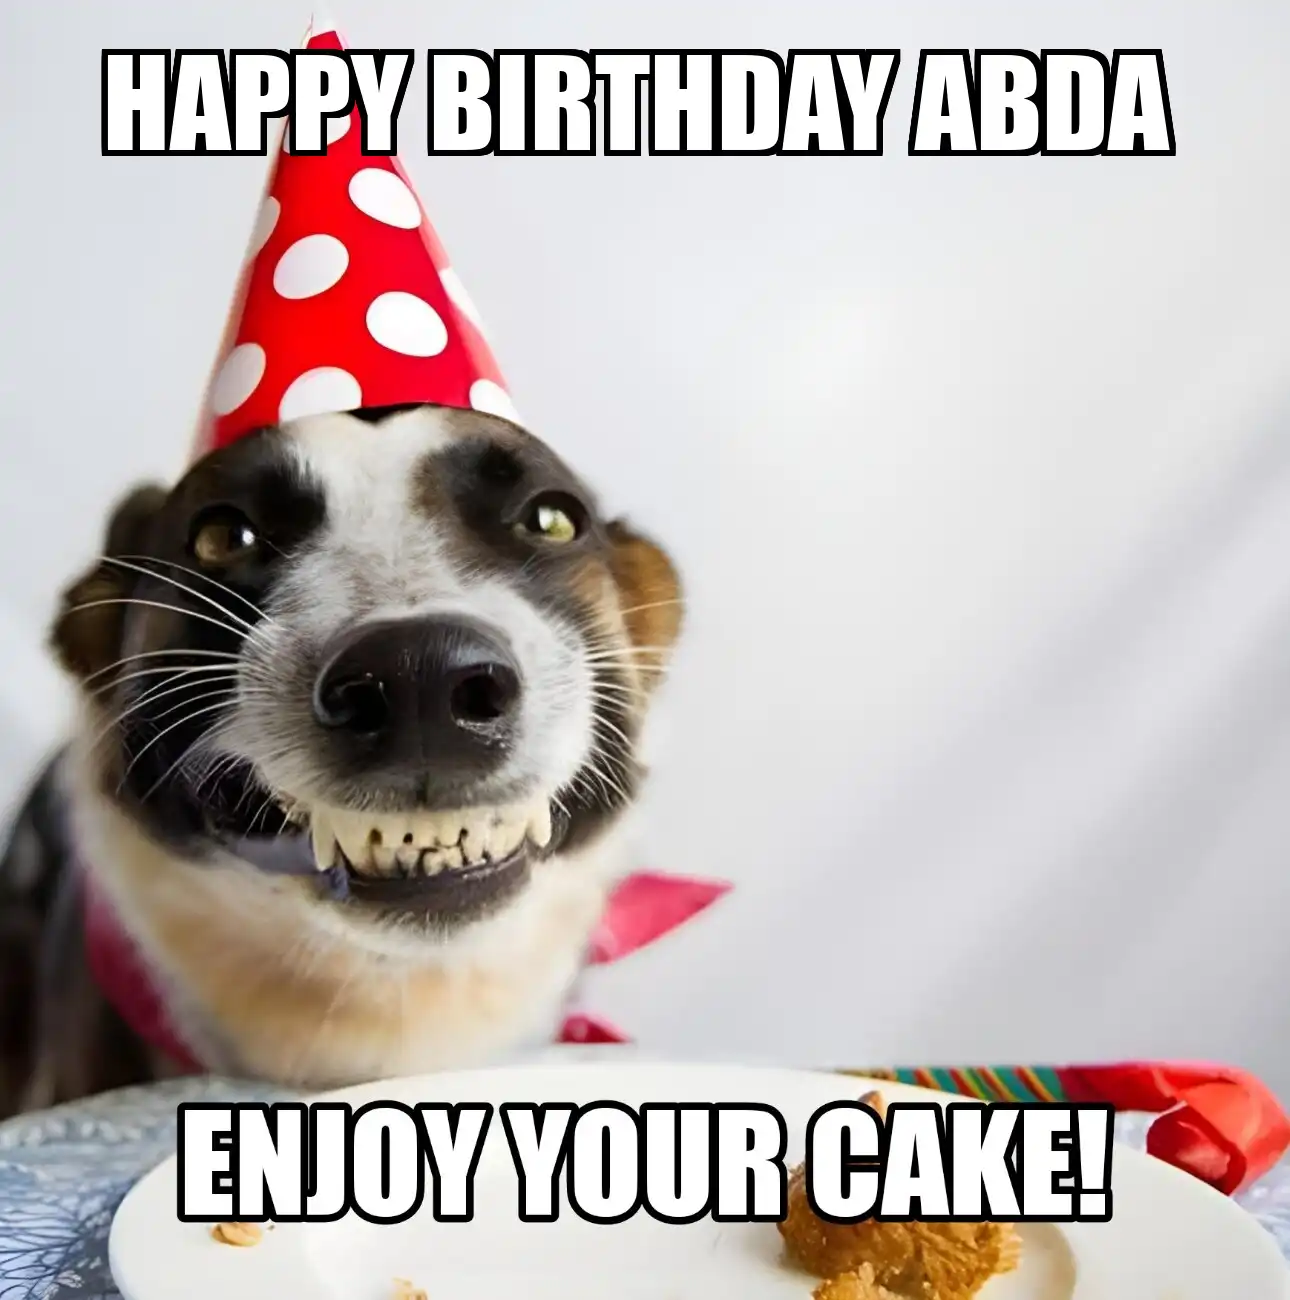 Happy Birthday Abda Enjoy Your Cake Dog Meme